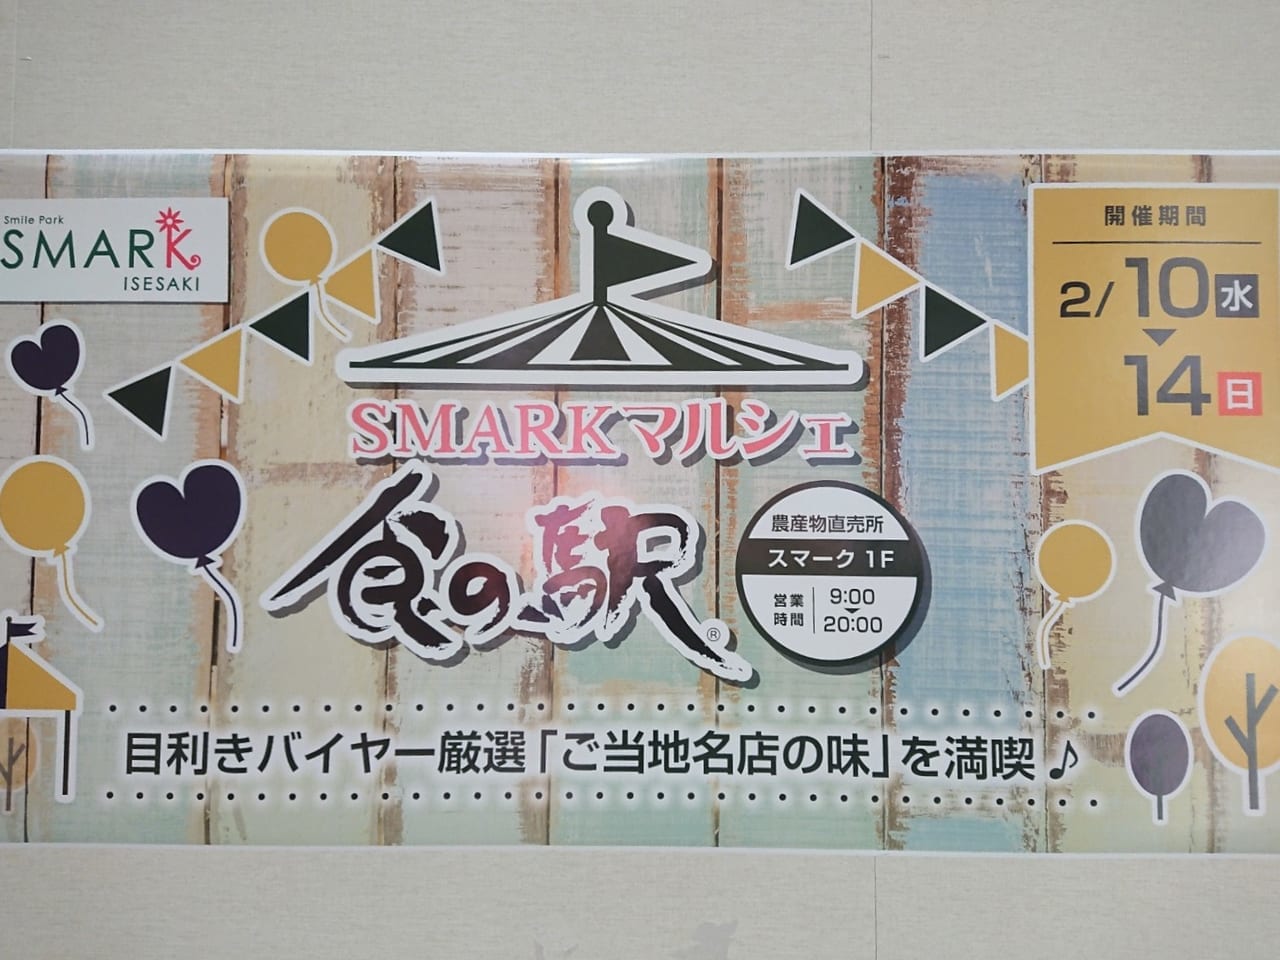 スマーク伊勢崎で「食の駅SMARKマルシェ」開催中、ご当地名物が味わえる